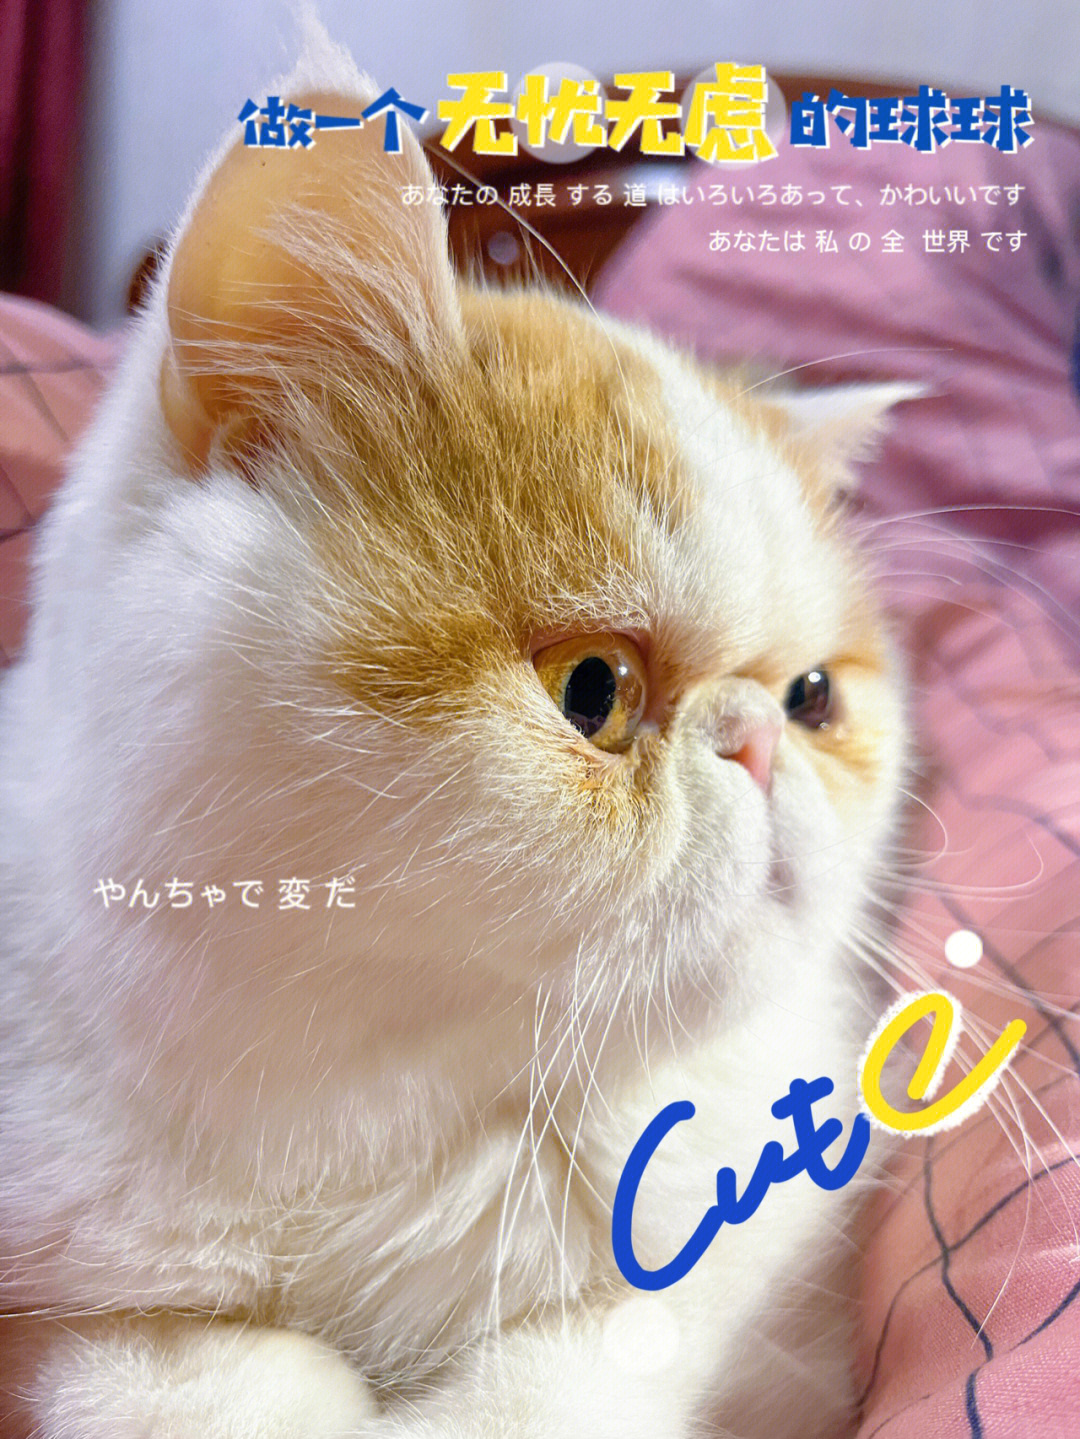 加菲公猫发腮前后照片图片